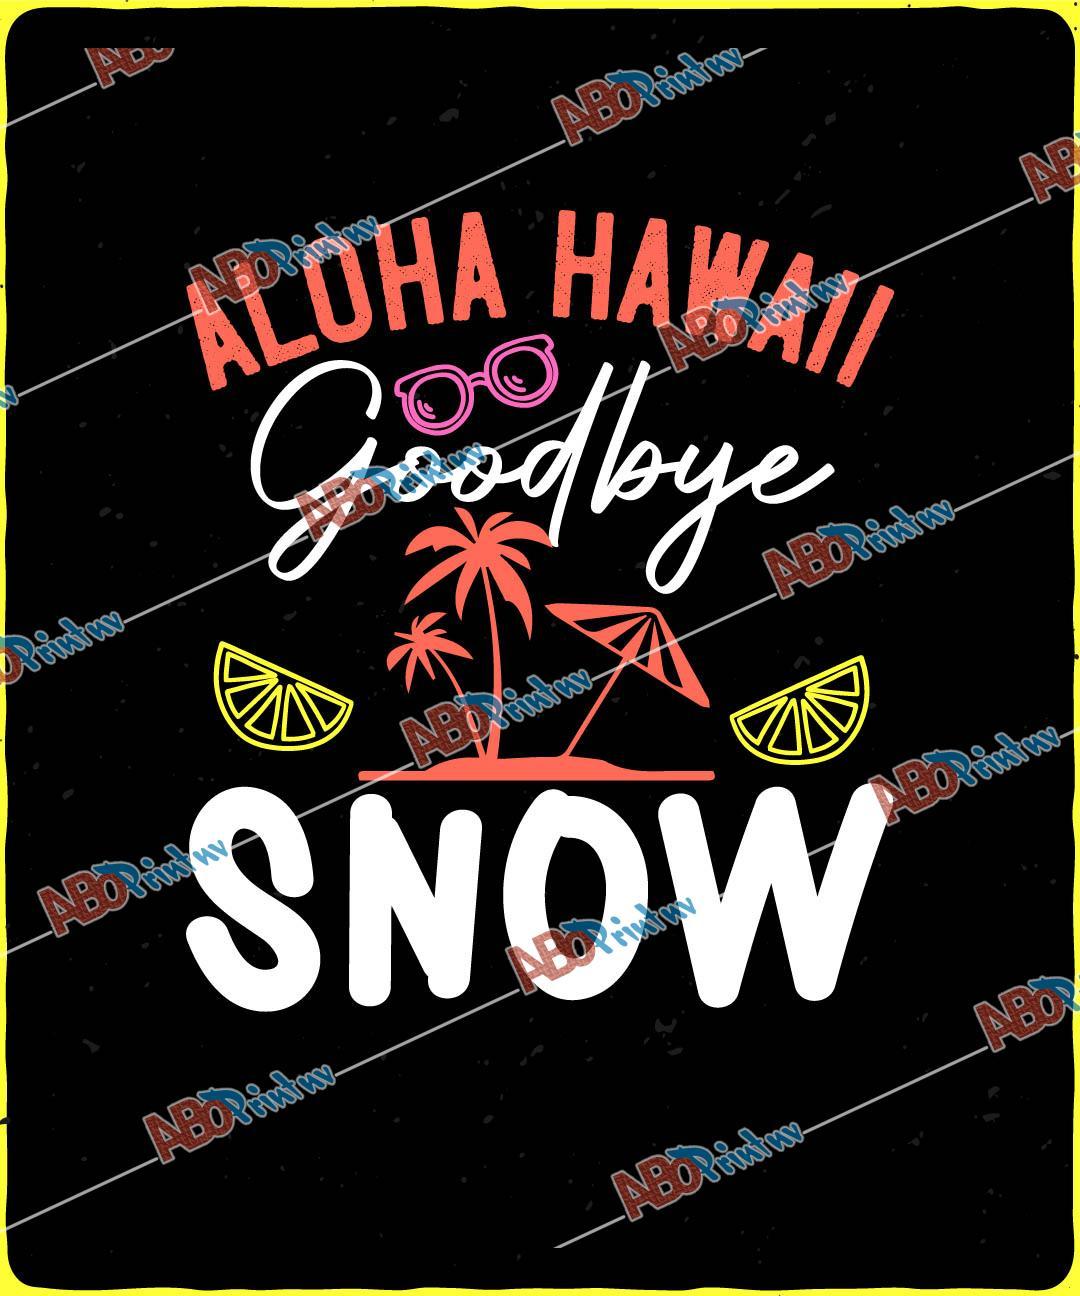 Aloha Hawaii, goodbye snow.jpg